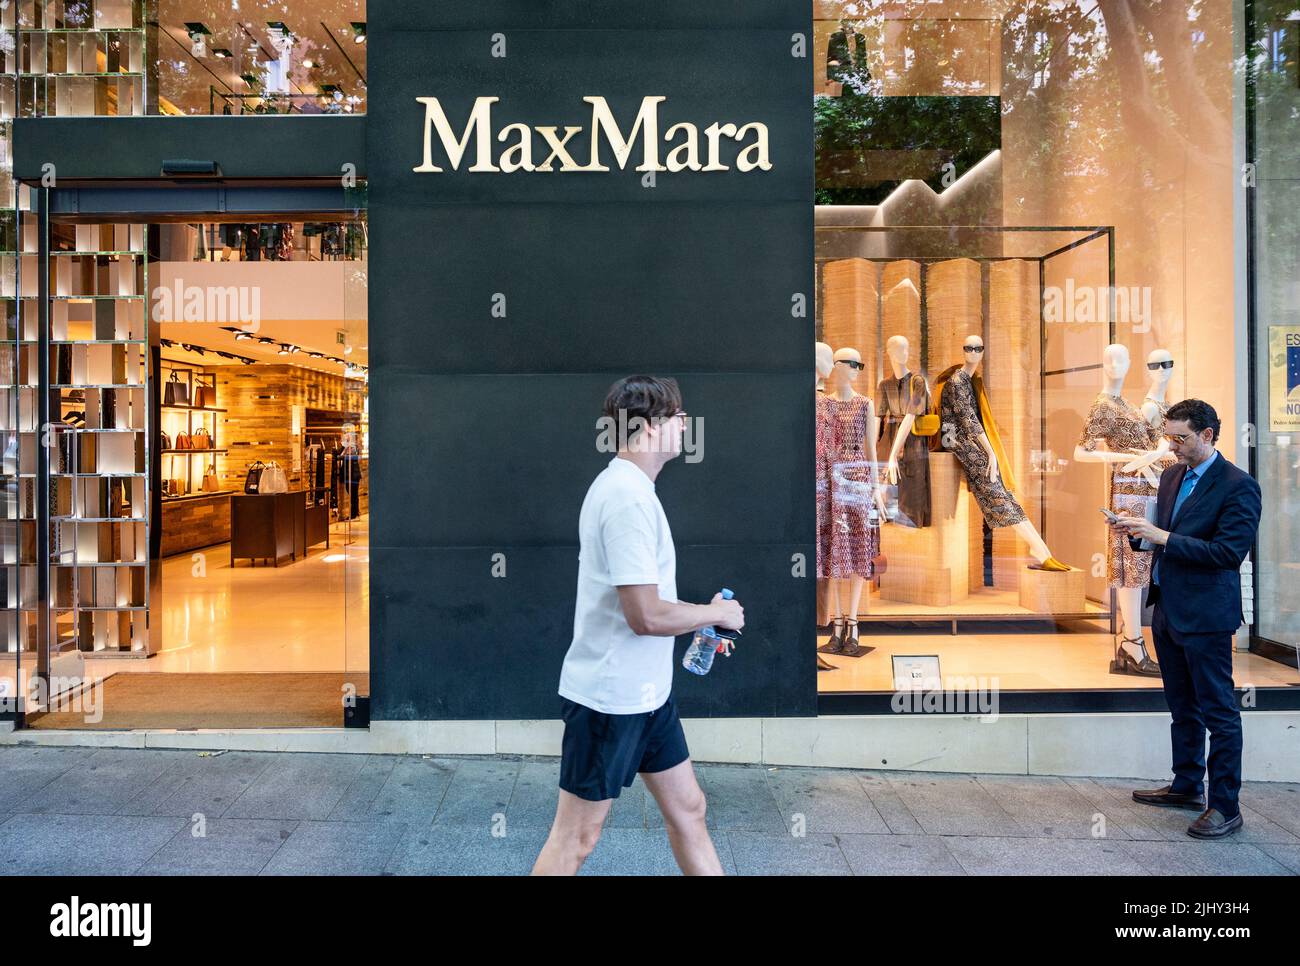 Aanvankelijk kort kogel Max mara store hi-res stock photography and images - Page 3 - Alamy